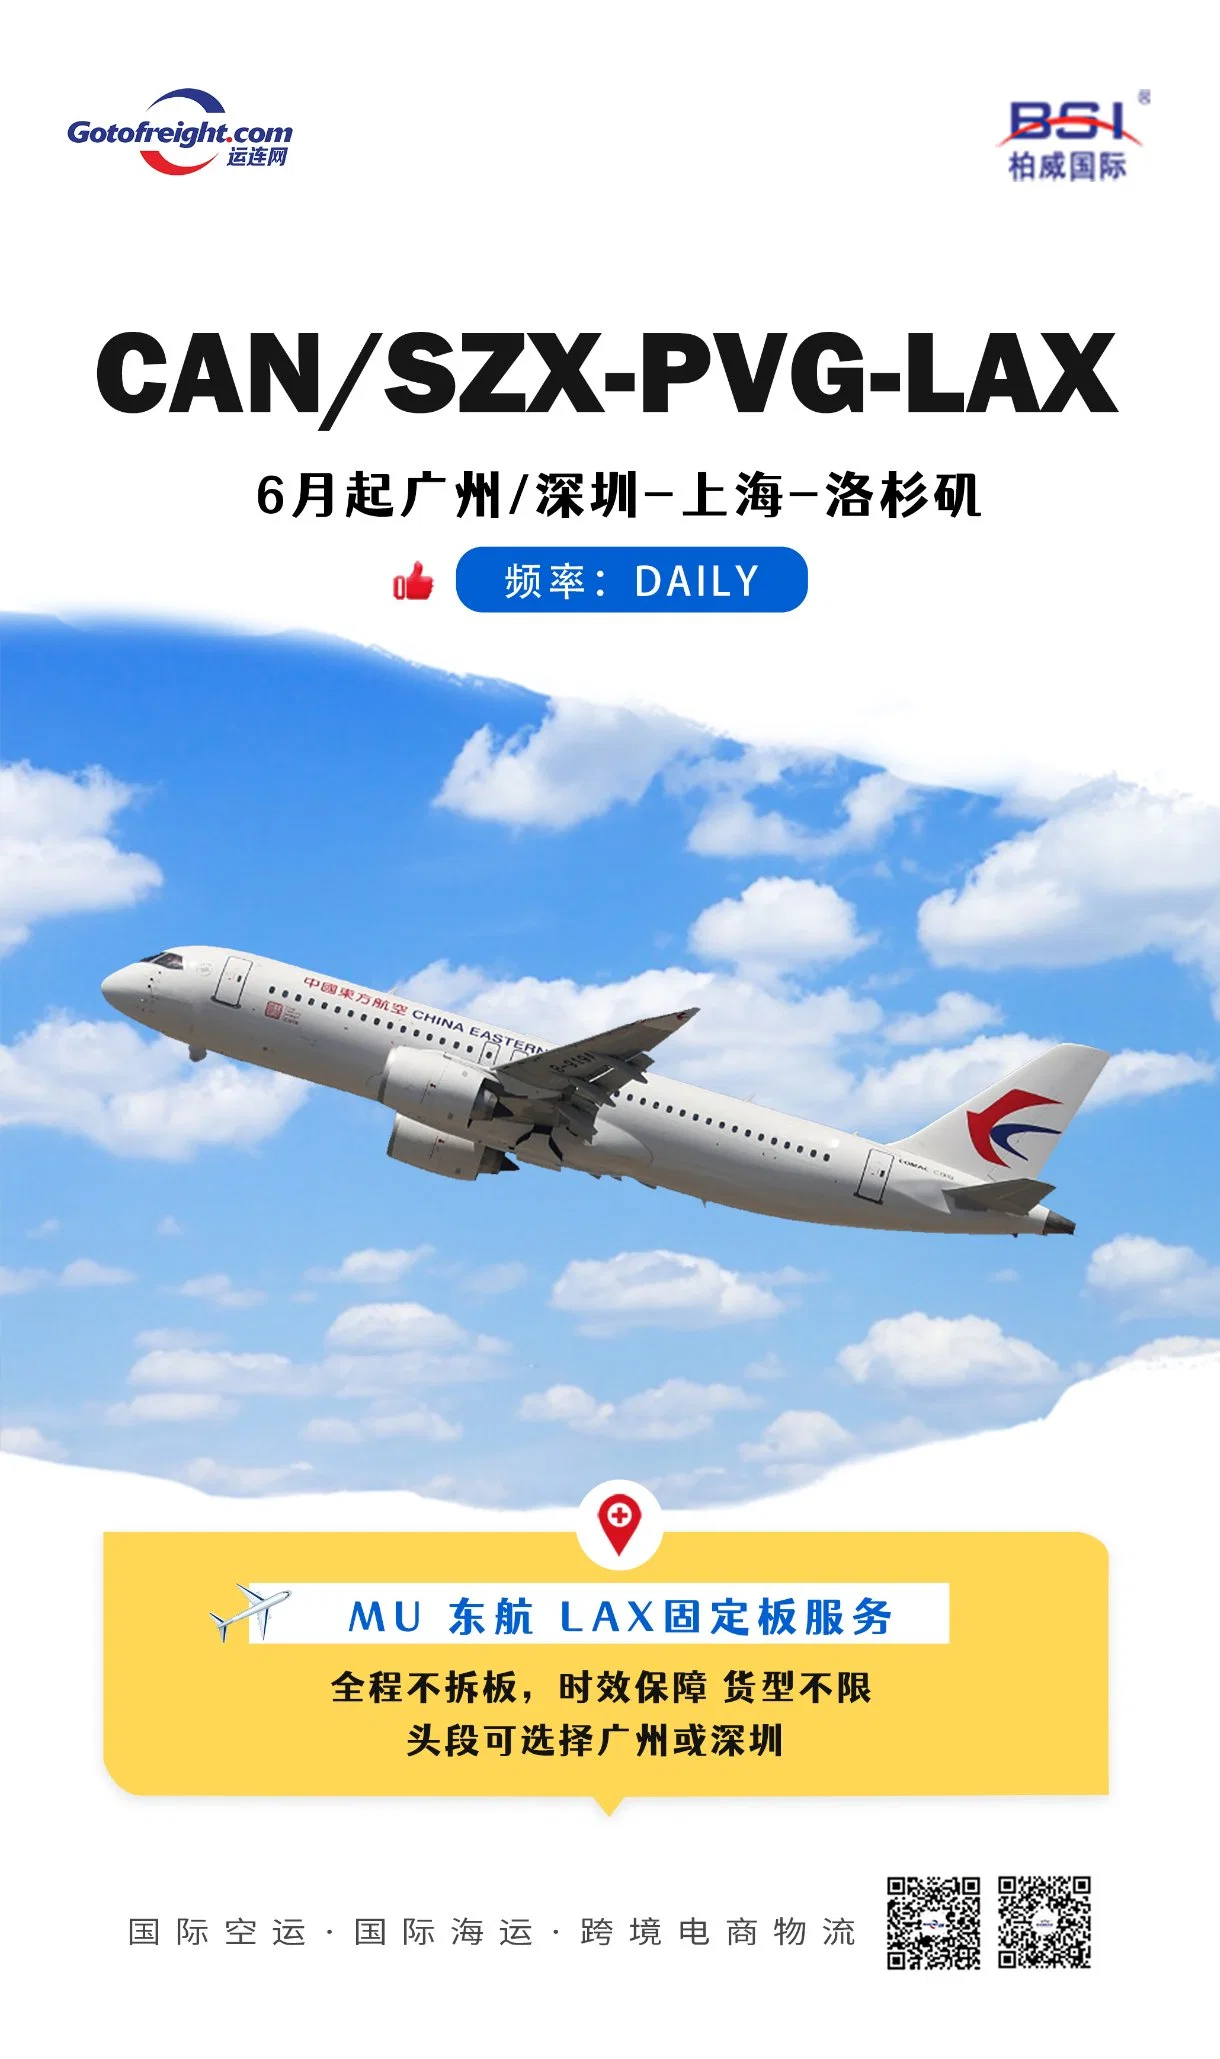 La compañía logística nacional China AAAAA ofrece carga aérea y marítima Servicio puerta a puerta de China a los Ángeles (LAX) / Chicago (ORD) / Nueva York (JFK)/Dallas (DFW)